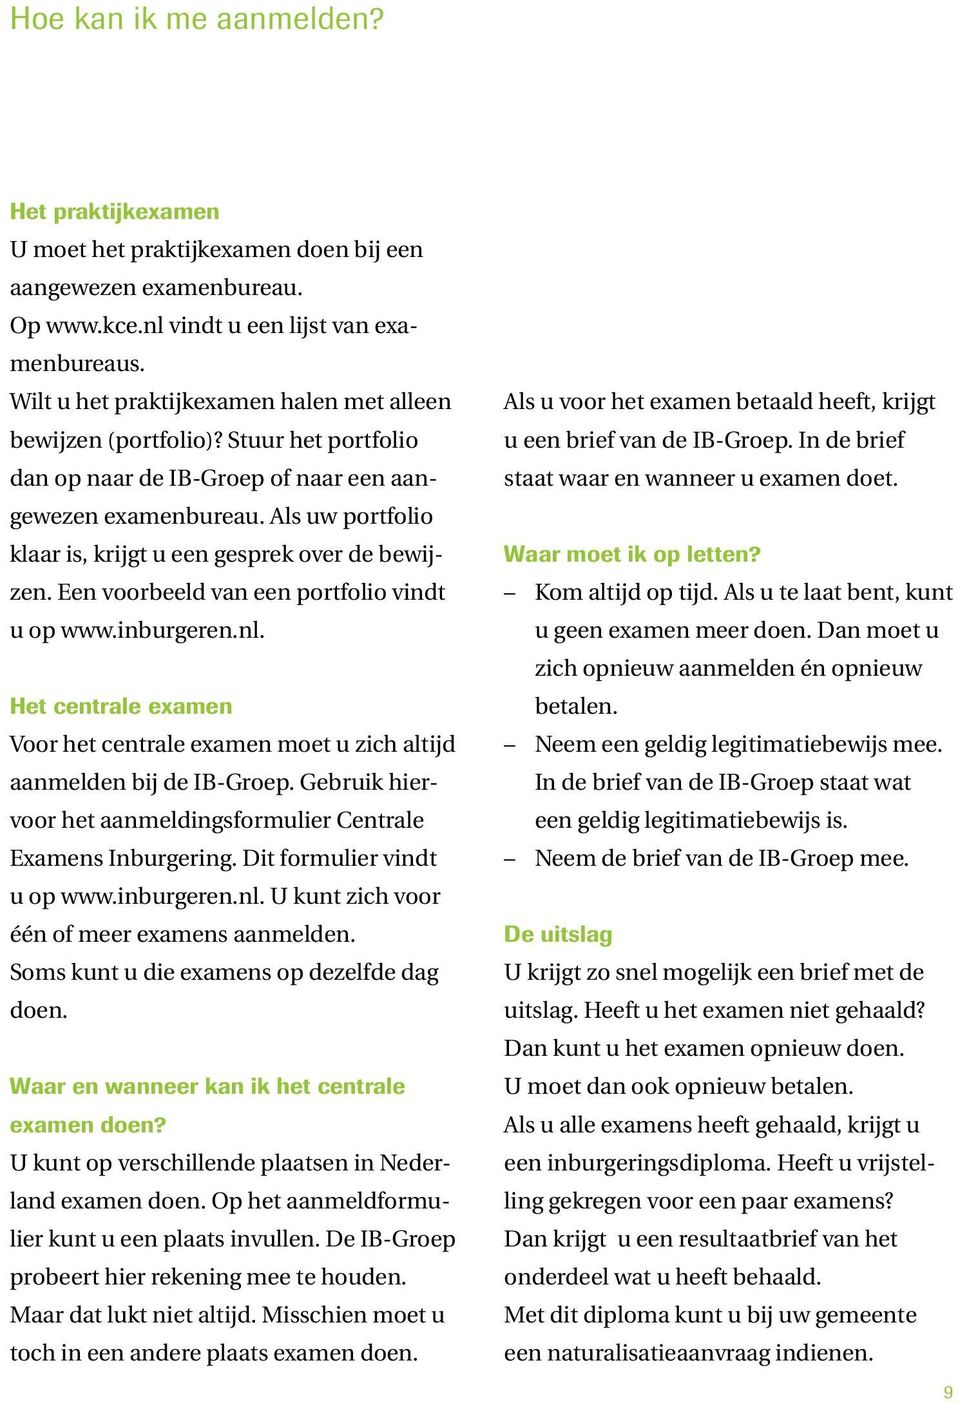 Als uw portfolio klaar is, krijgt u een gesprek over de bewijzen. Een voorbeeld van een portfolio vindt u op www.inburgeren.nl.